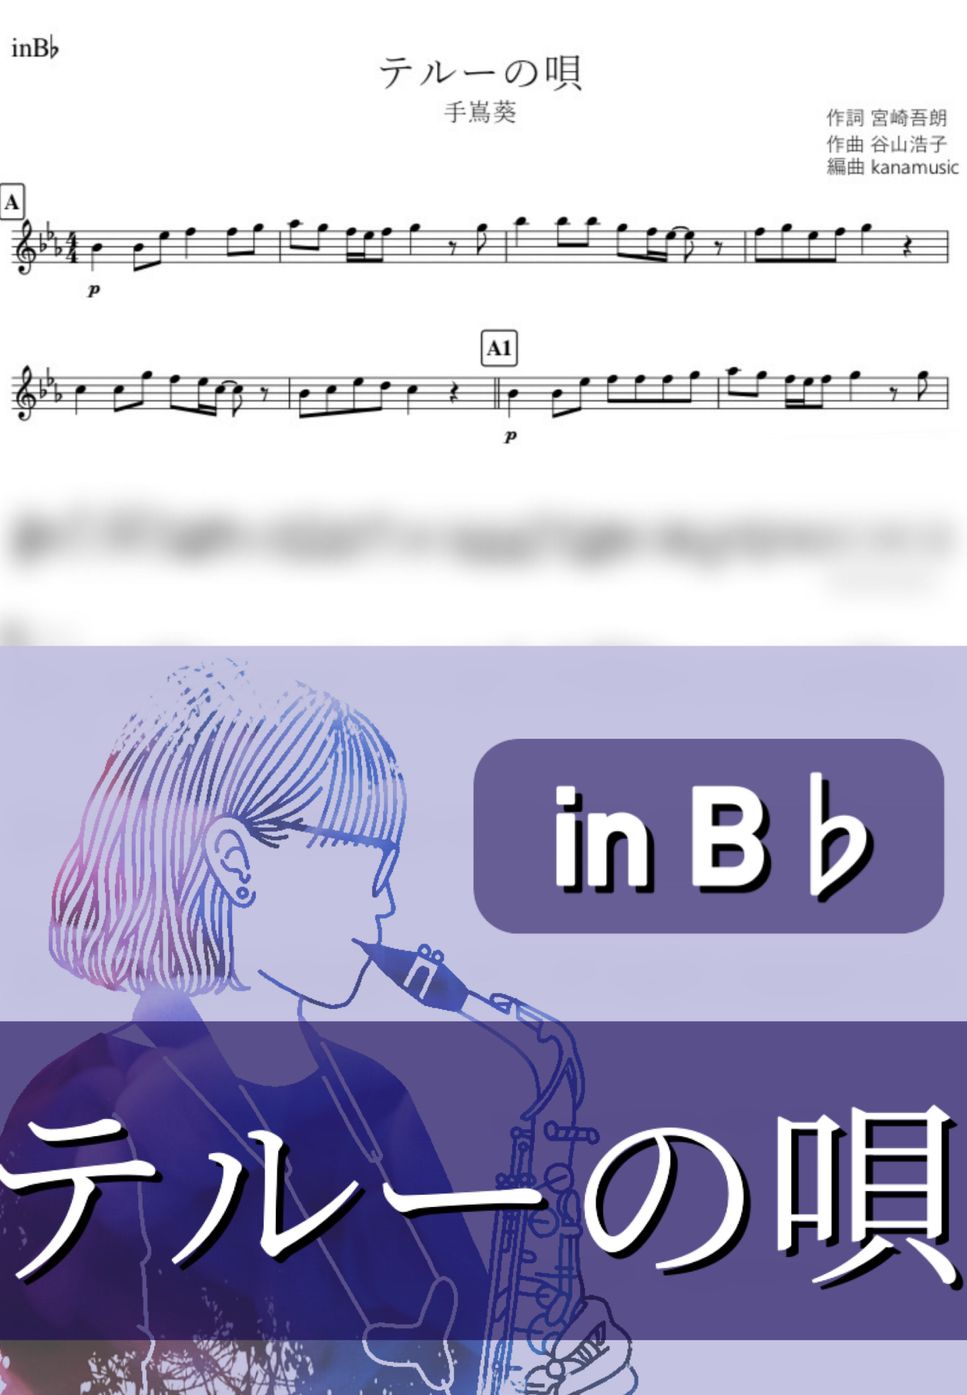 ゲド戦記 - テルーの唄 (B♭) by kanamusic